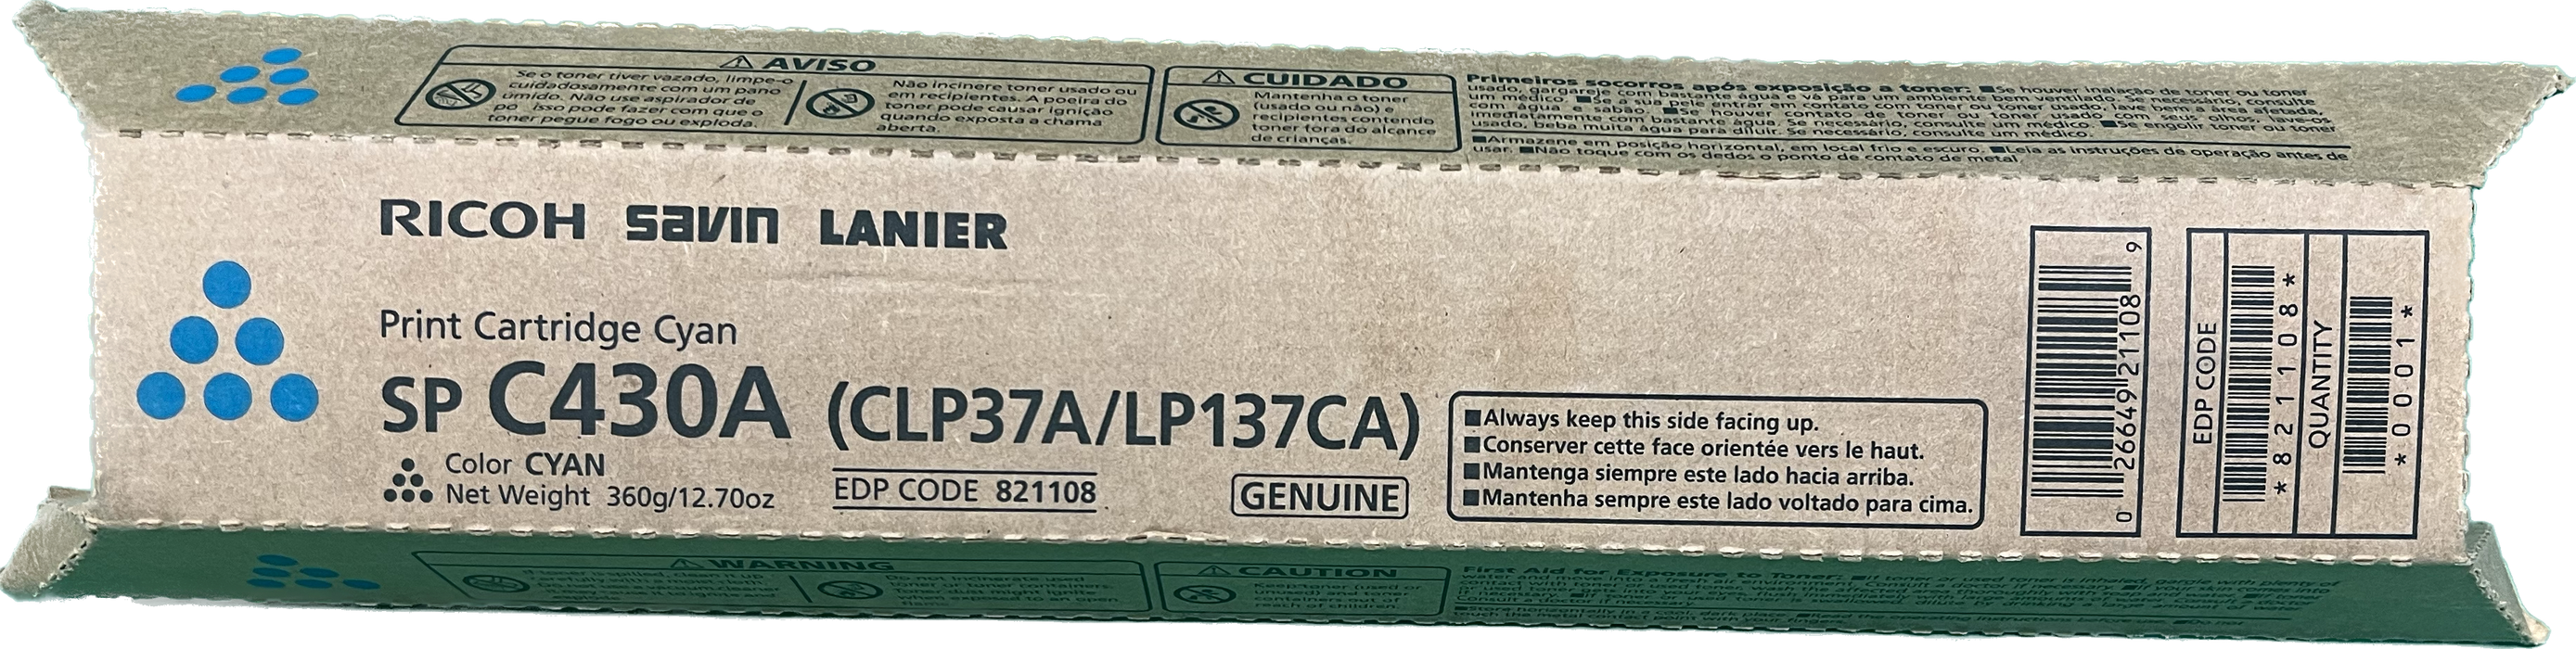 Genuine Ricoh Cyan Toner Cartridge | 821108 | SP C430A (CLP37A/LP137CA)